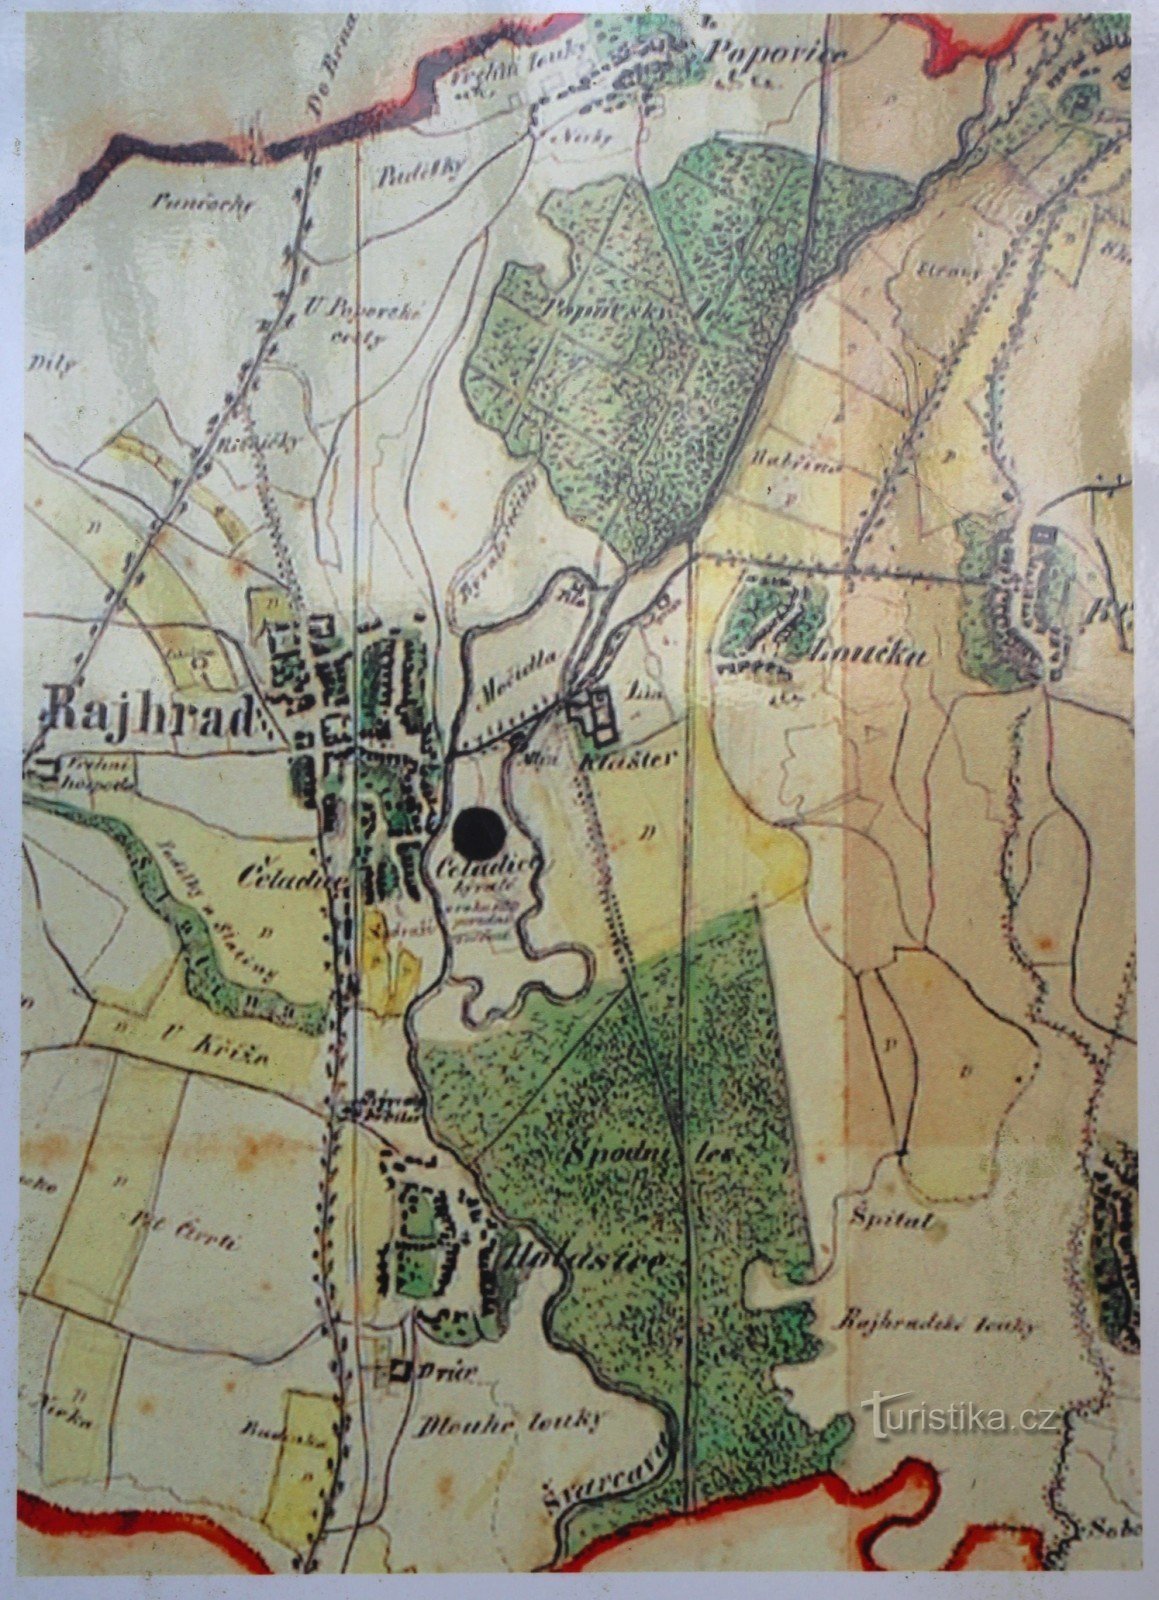 Mappa dei dintorni del monastero della metà del XIX secolo, è chiaramente visibile nella metà inferiore della mappa